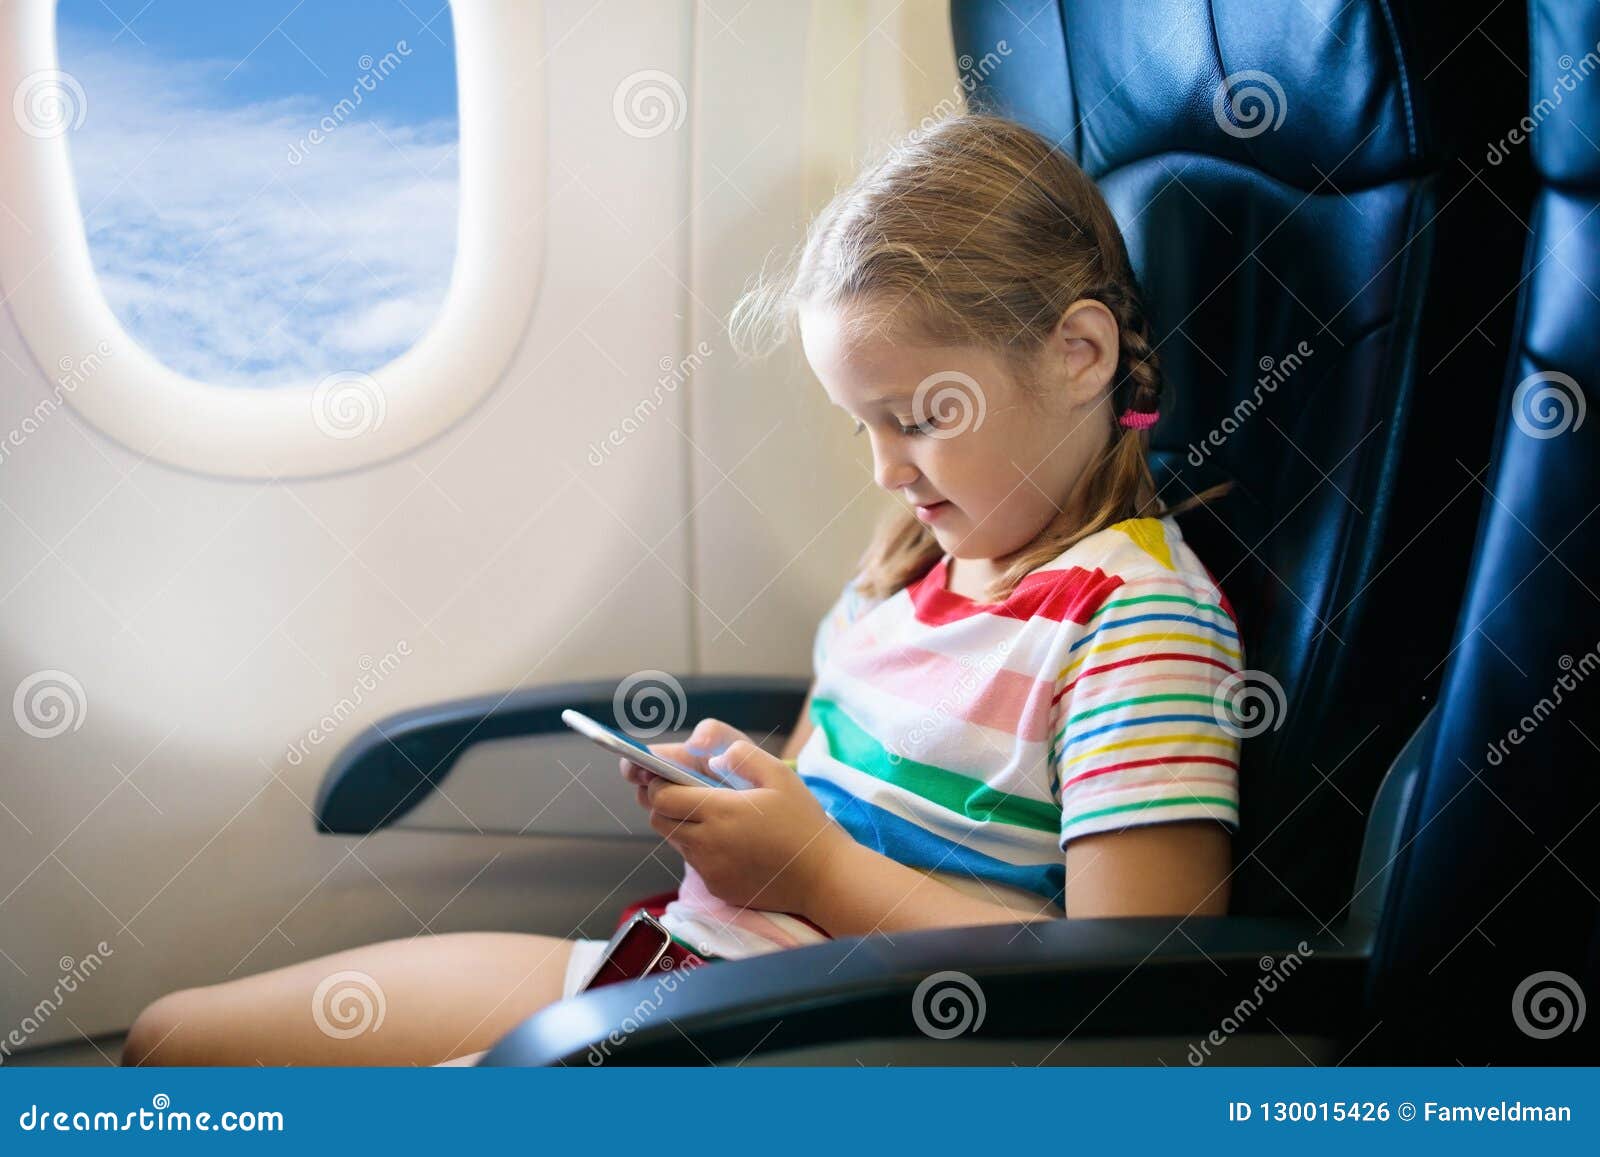 在飞机的儿童飞行 与孩子的飞行 库存照片. 图片 包括有 白种人, 人们, 航空, 选件类, 开会, 节假日 - 118470908